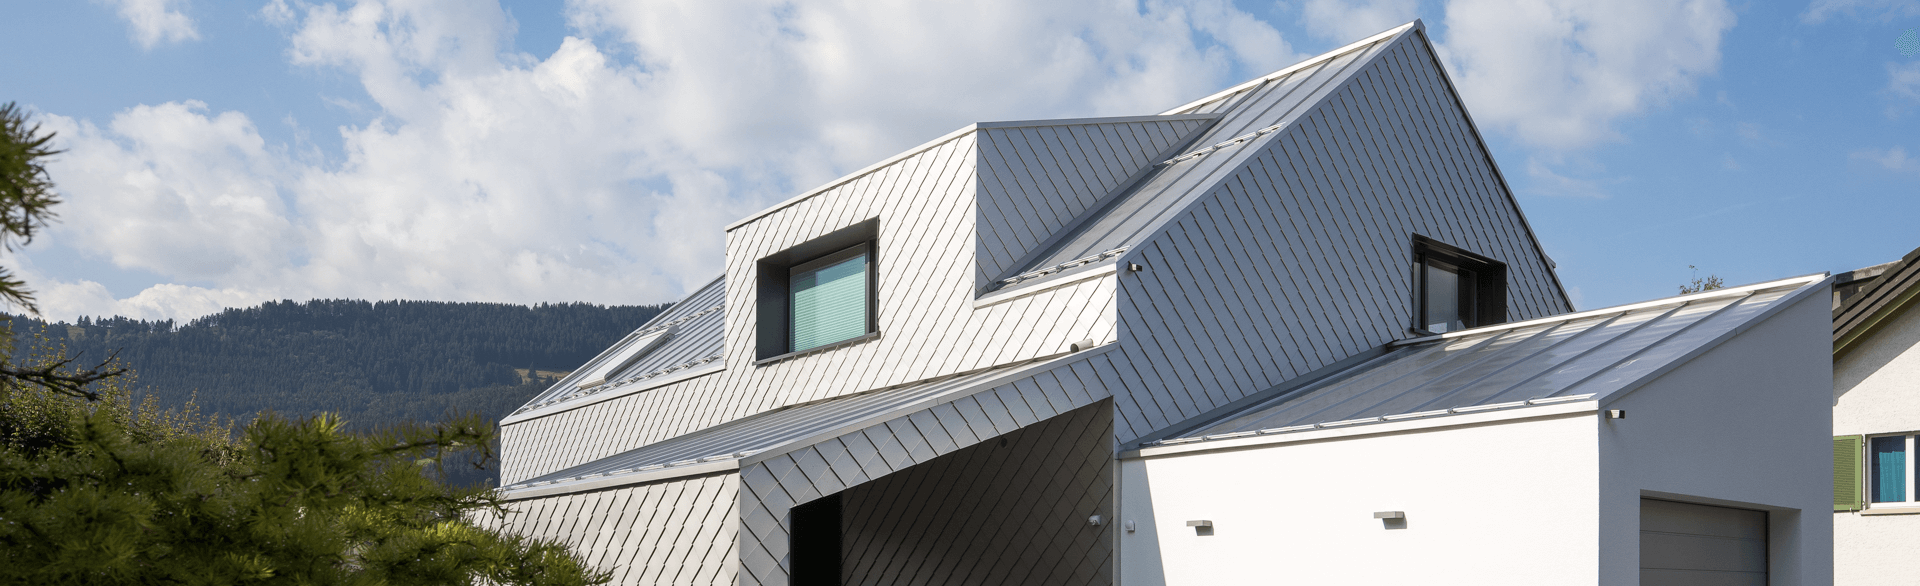 Wohnhaus mit Dach und Fassade aus HFX Edelstahl von ROOFINOX